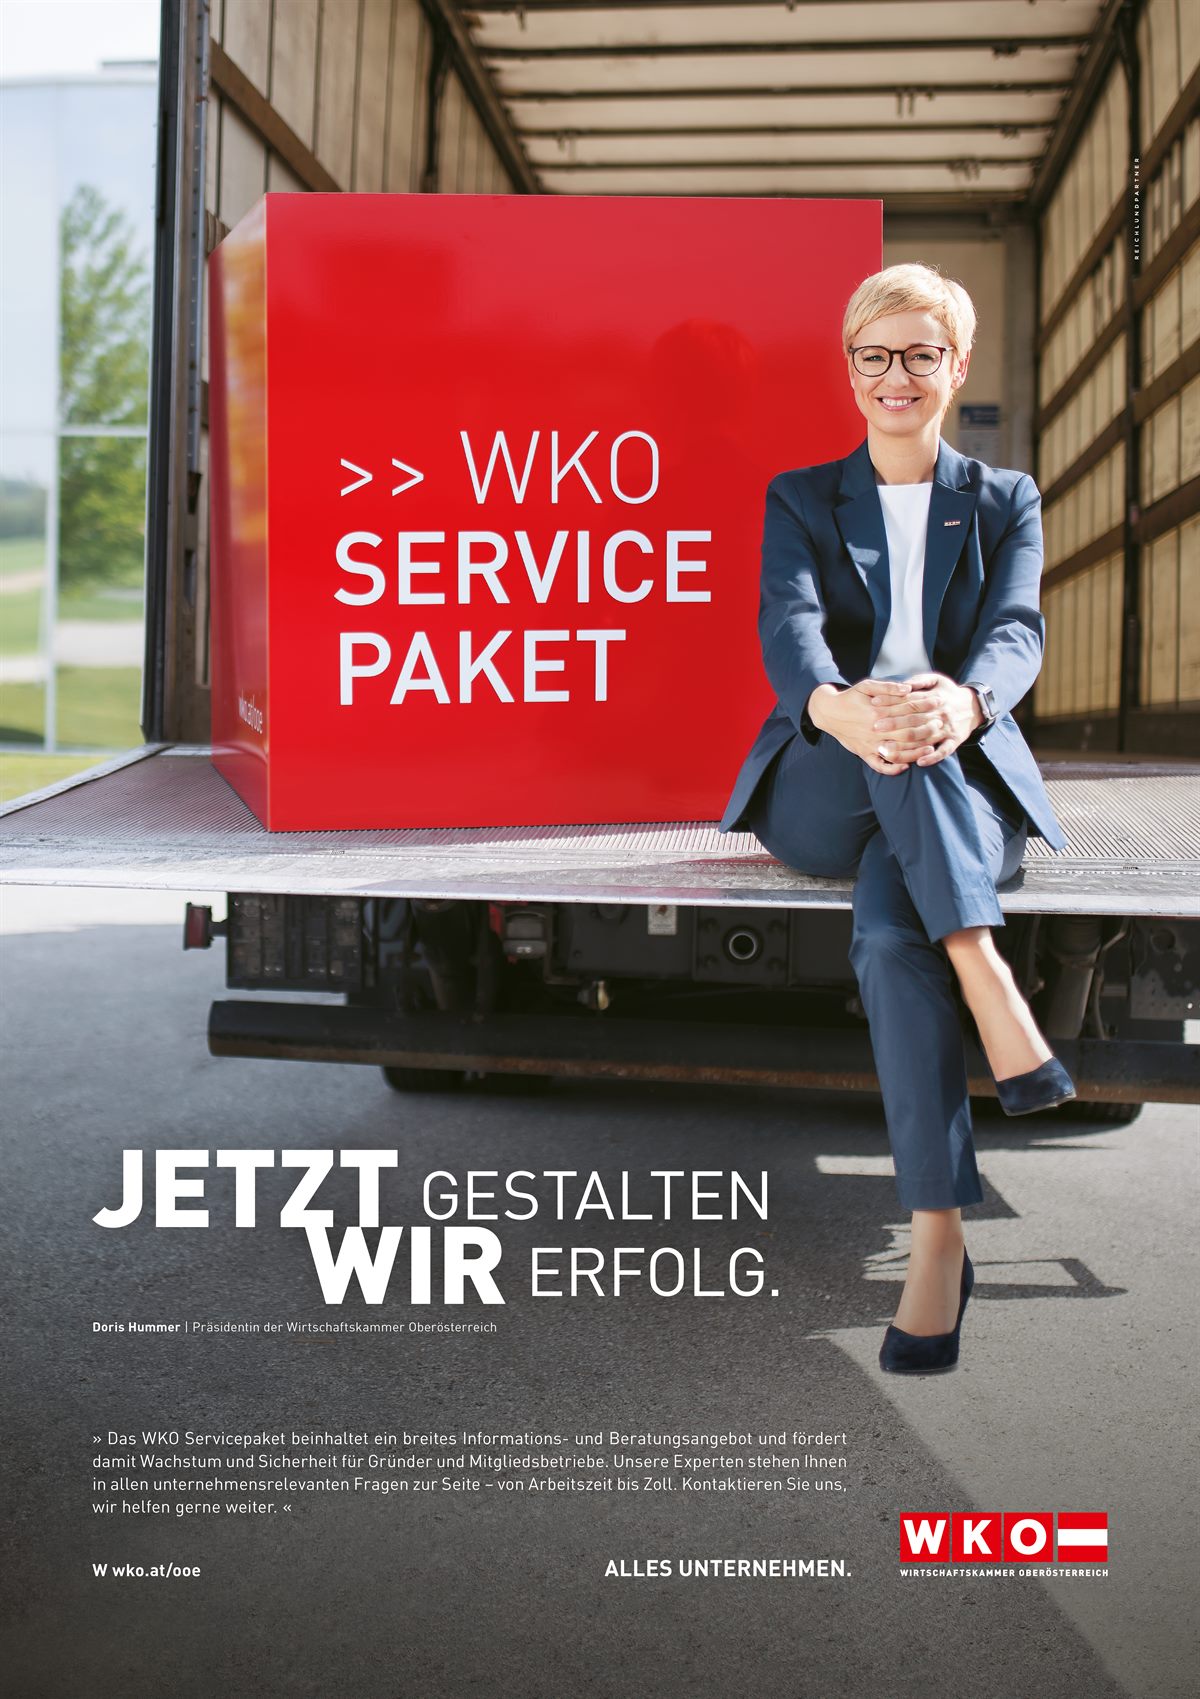 Kampagnensujet für die WKO Oberösterreich